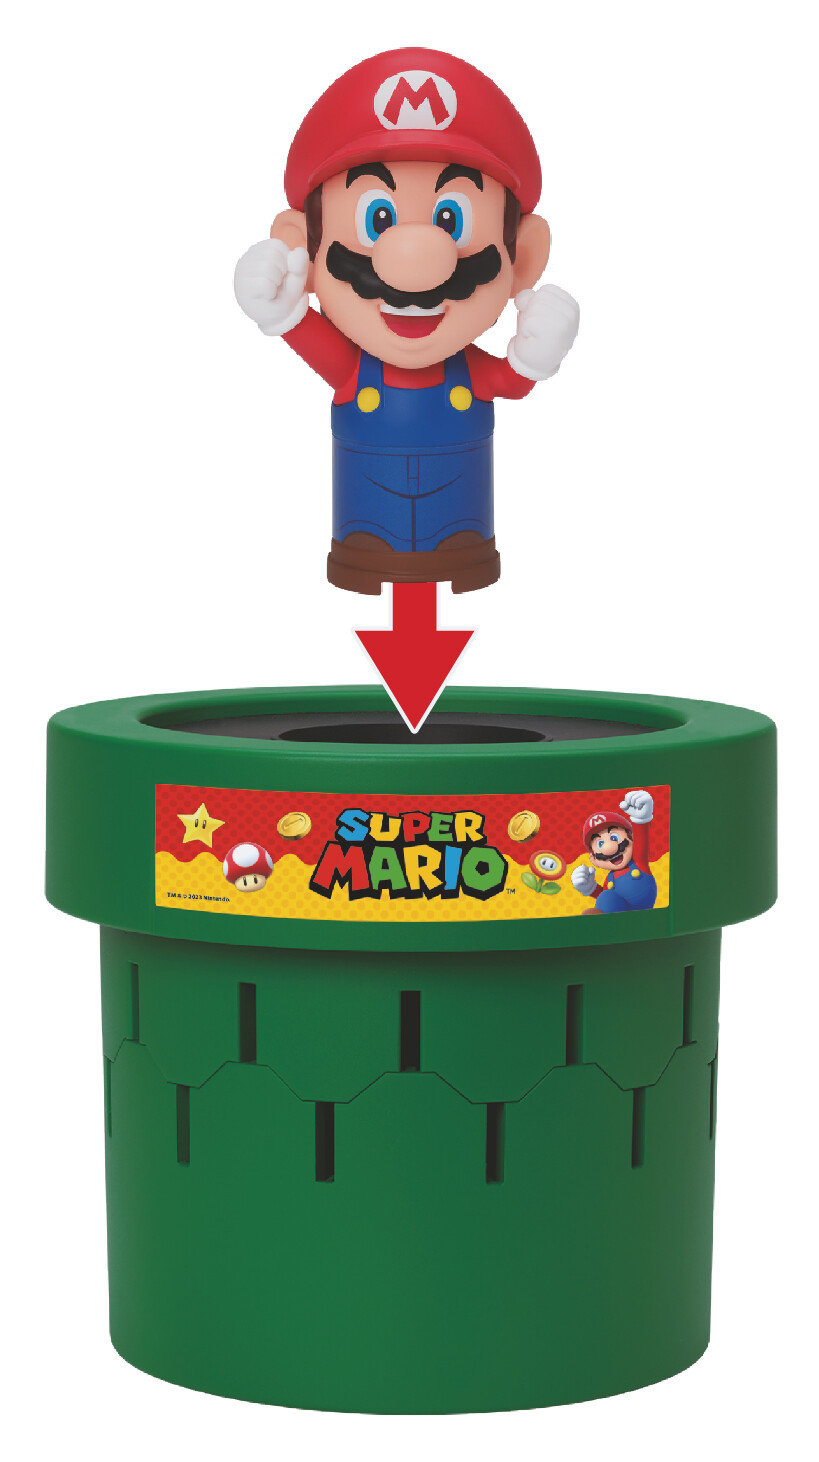 Rocco giocattoli - super mario pop up - gioco da tavolo - Super Mario